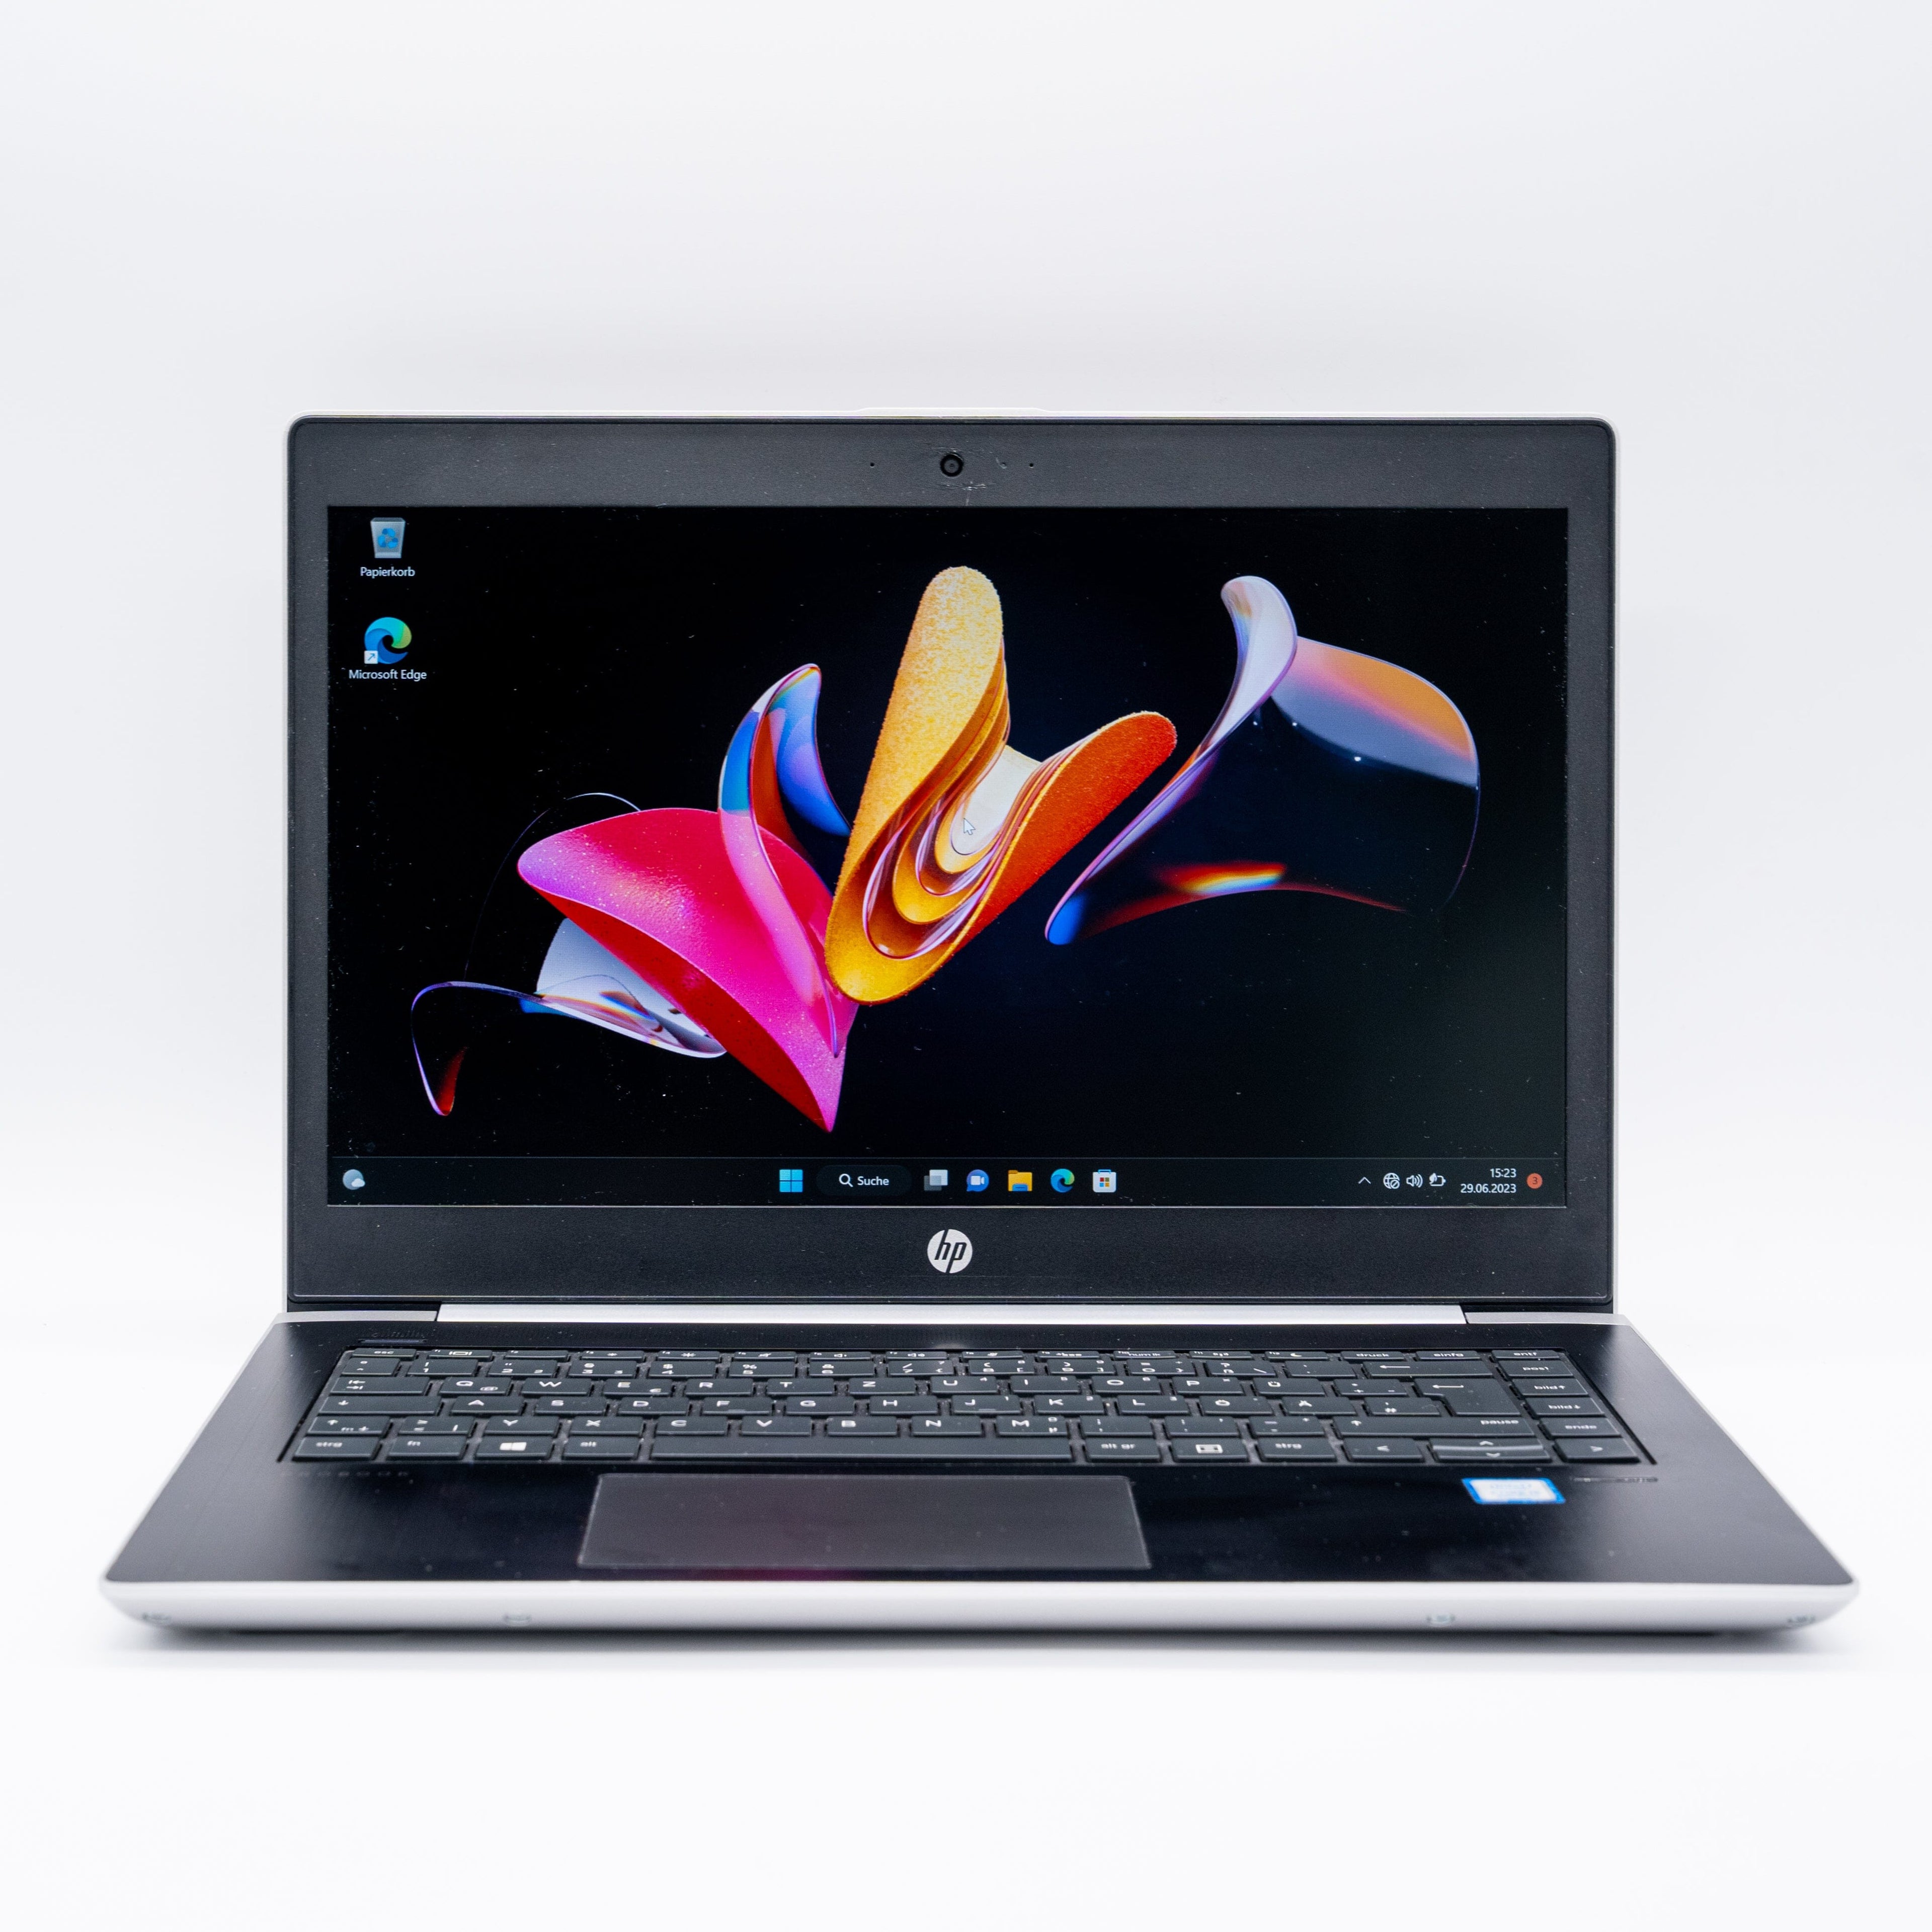 HP ProBook 430 G5 Intel i5-8250U 16GB DDR4 256GB SSD Laptops Notebook-Pro 